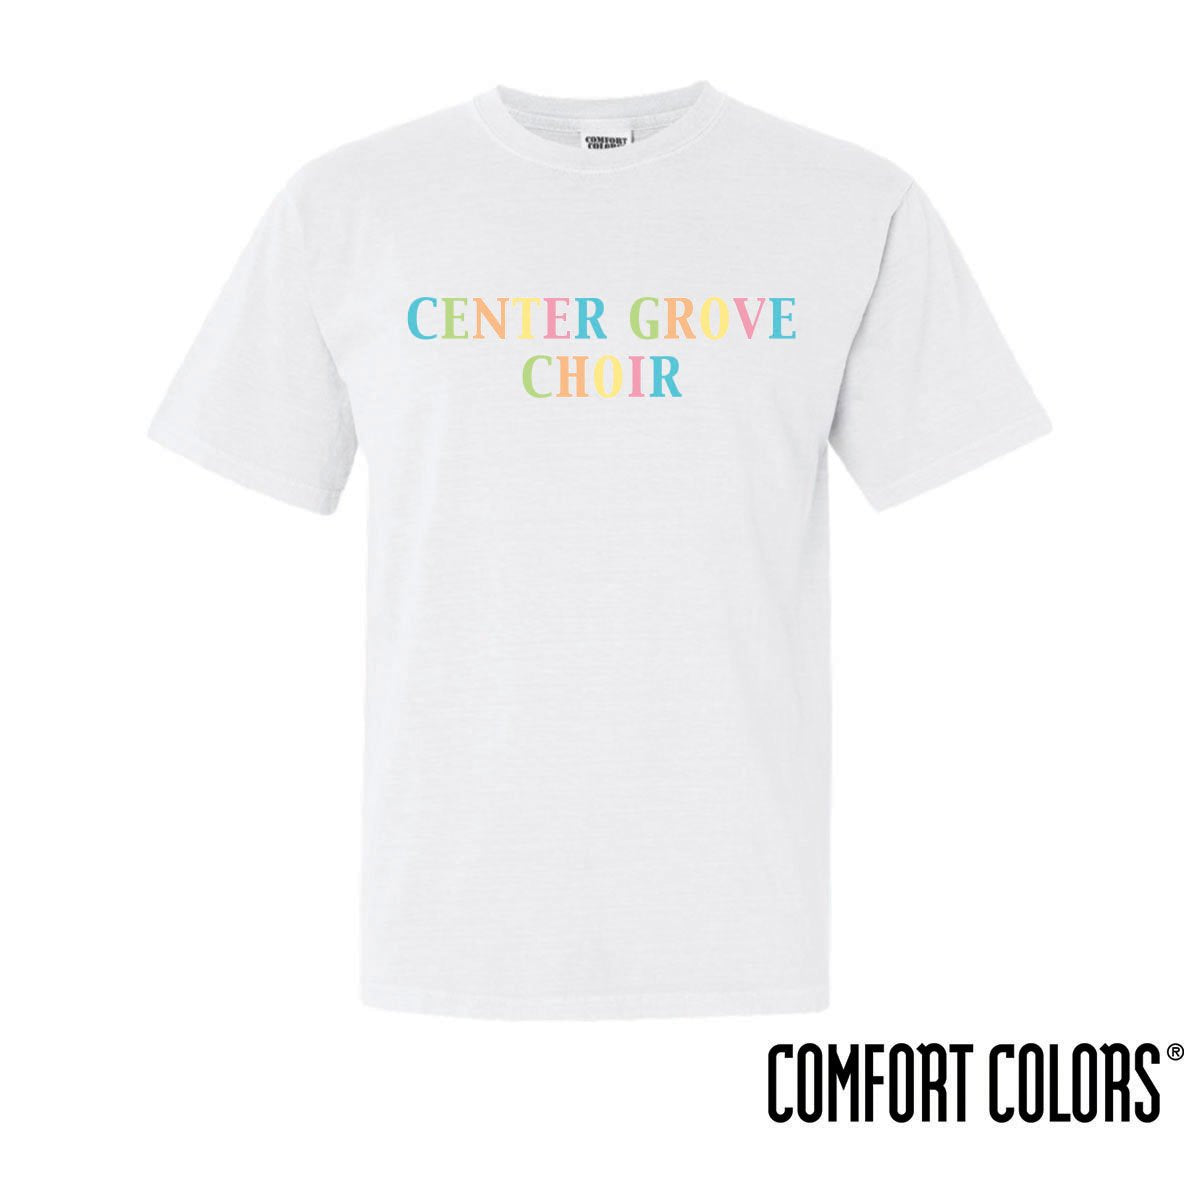 Center Grove Choir Comfort Colors Rainbow Short Sleeve Tee